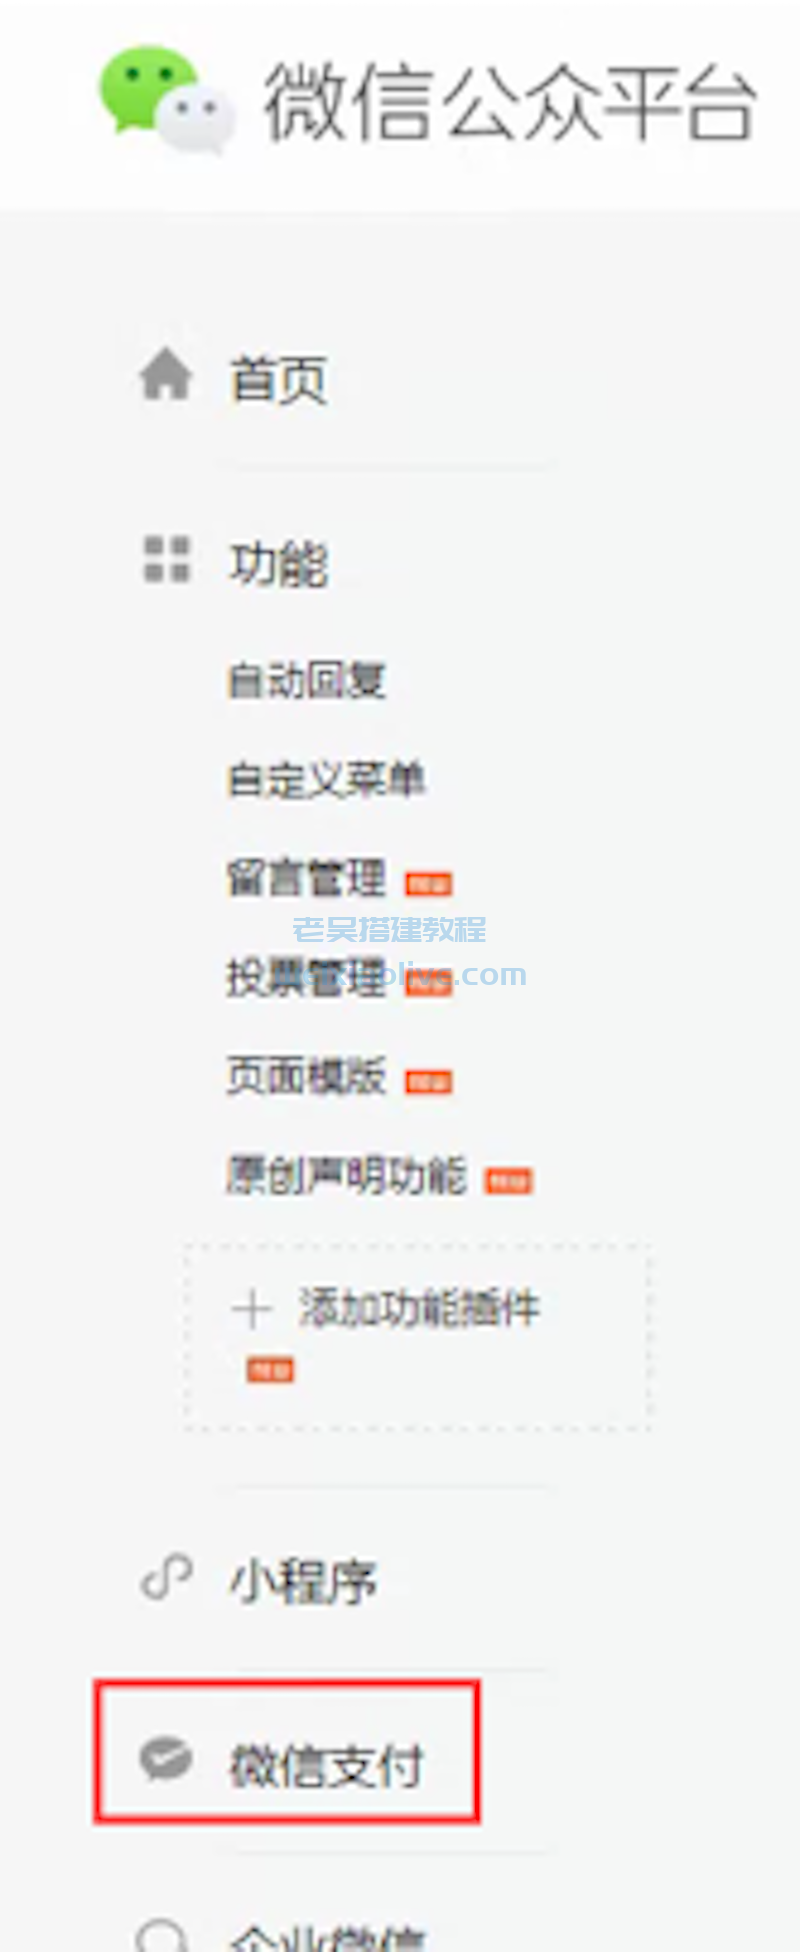 weixin支付接口申请及后台配置详细图文教程  第14张